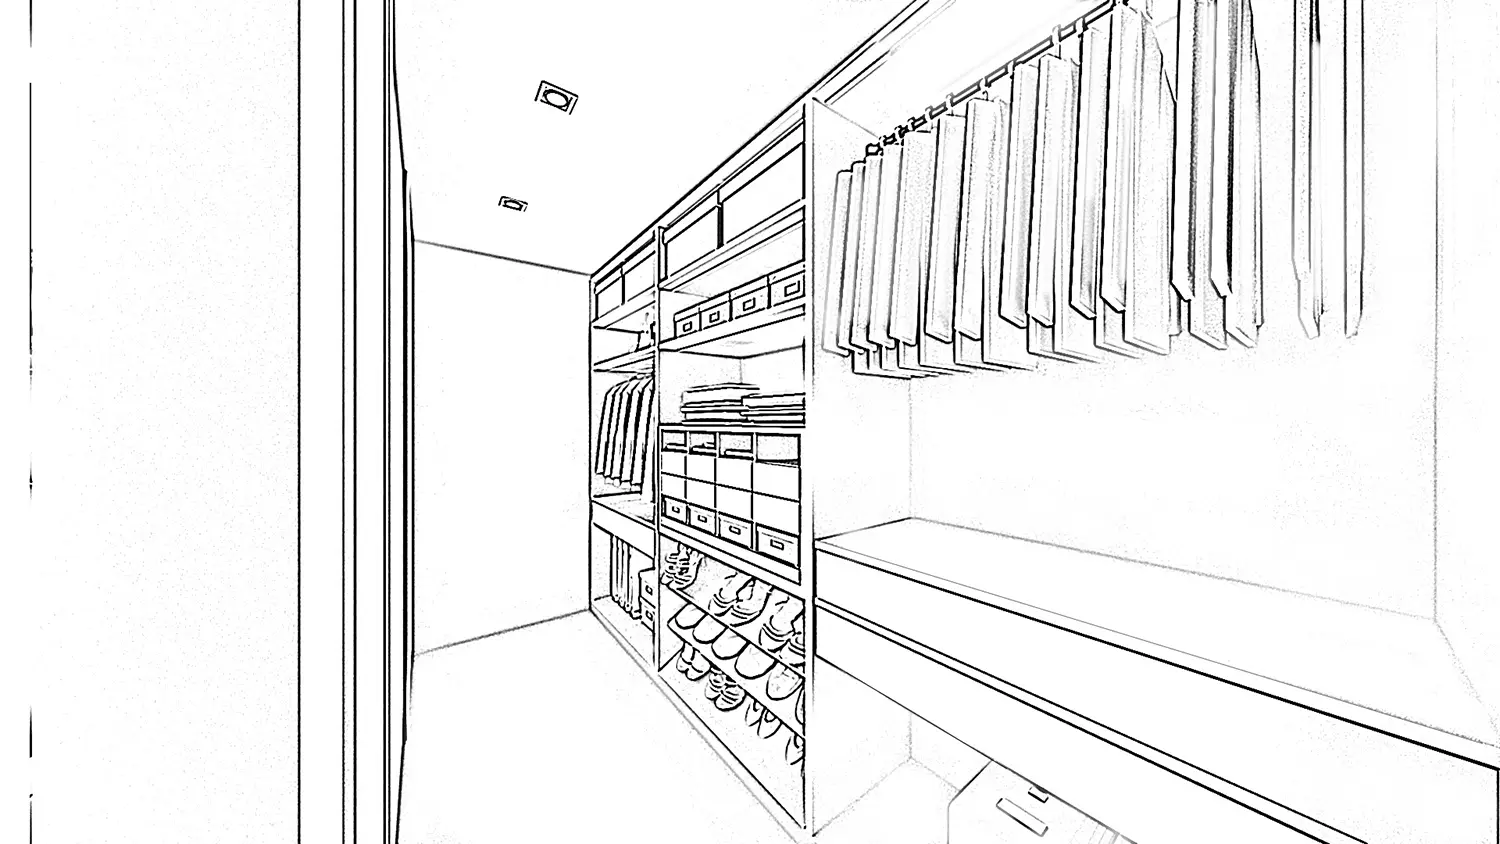 Schizzo in bianco e nero di una cabina armadio progettata dallo studio Elles Interior Design.